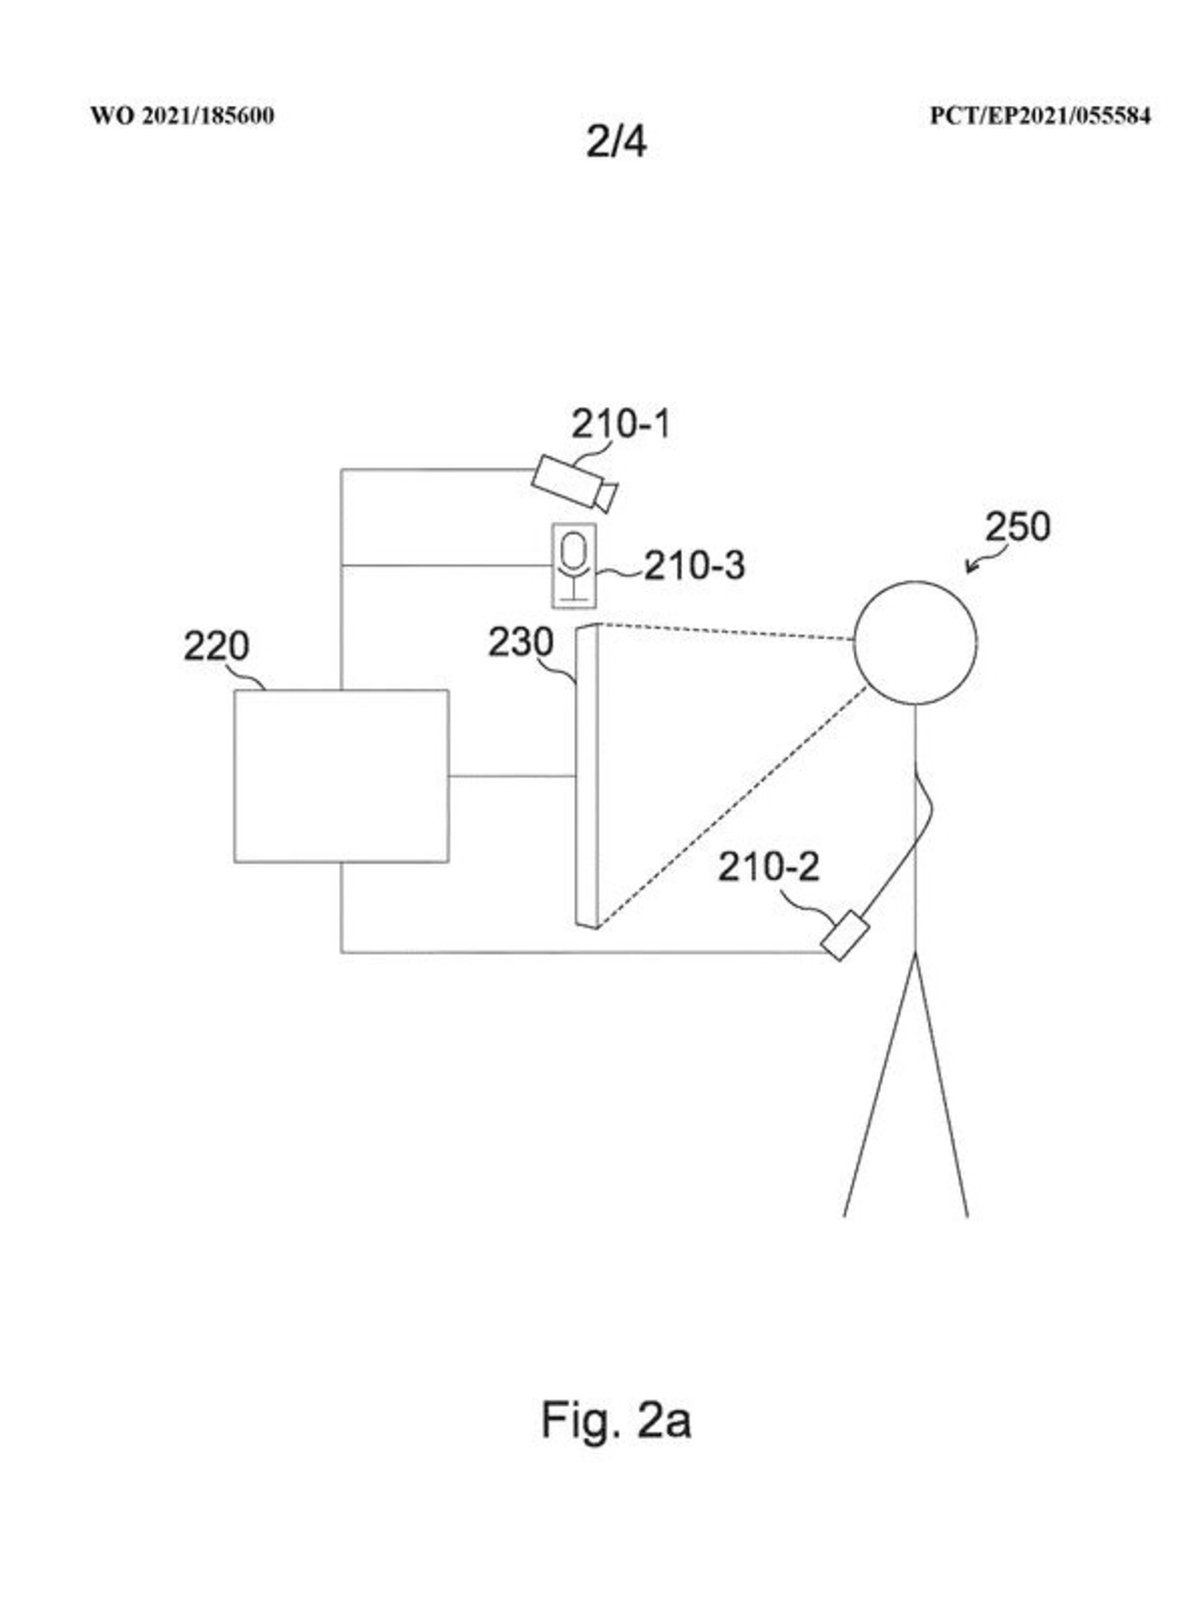 Patente del sistema de lectura biométrica de Sony